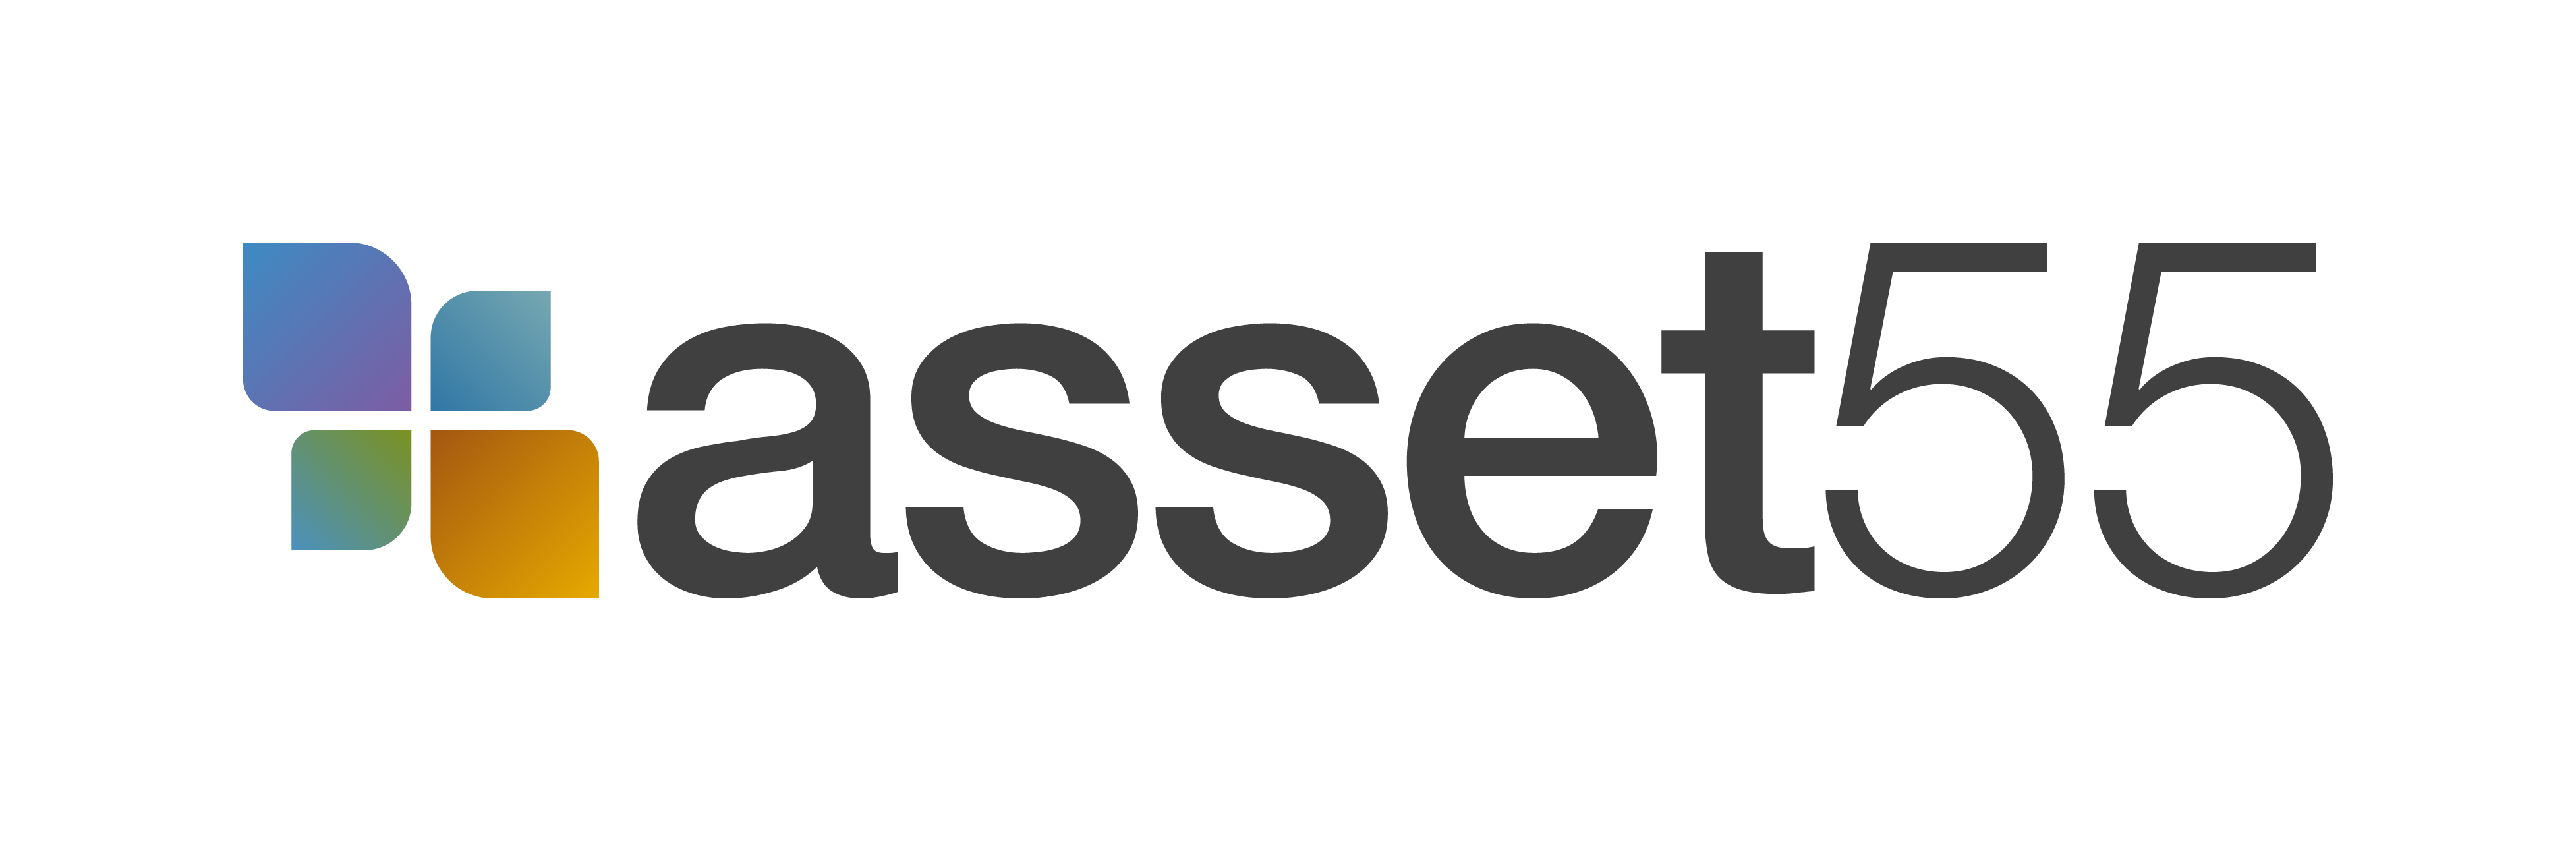 asset55 Logo